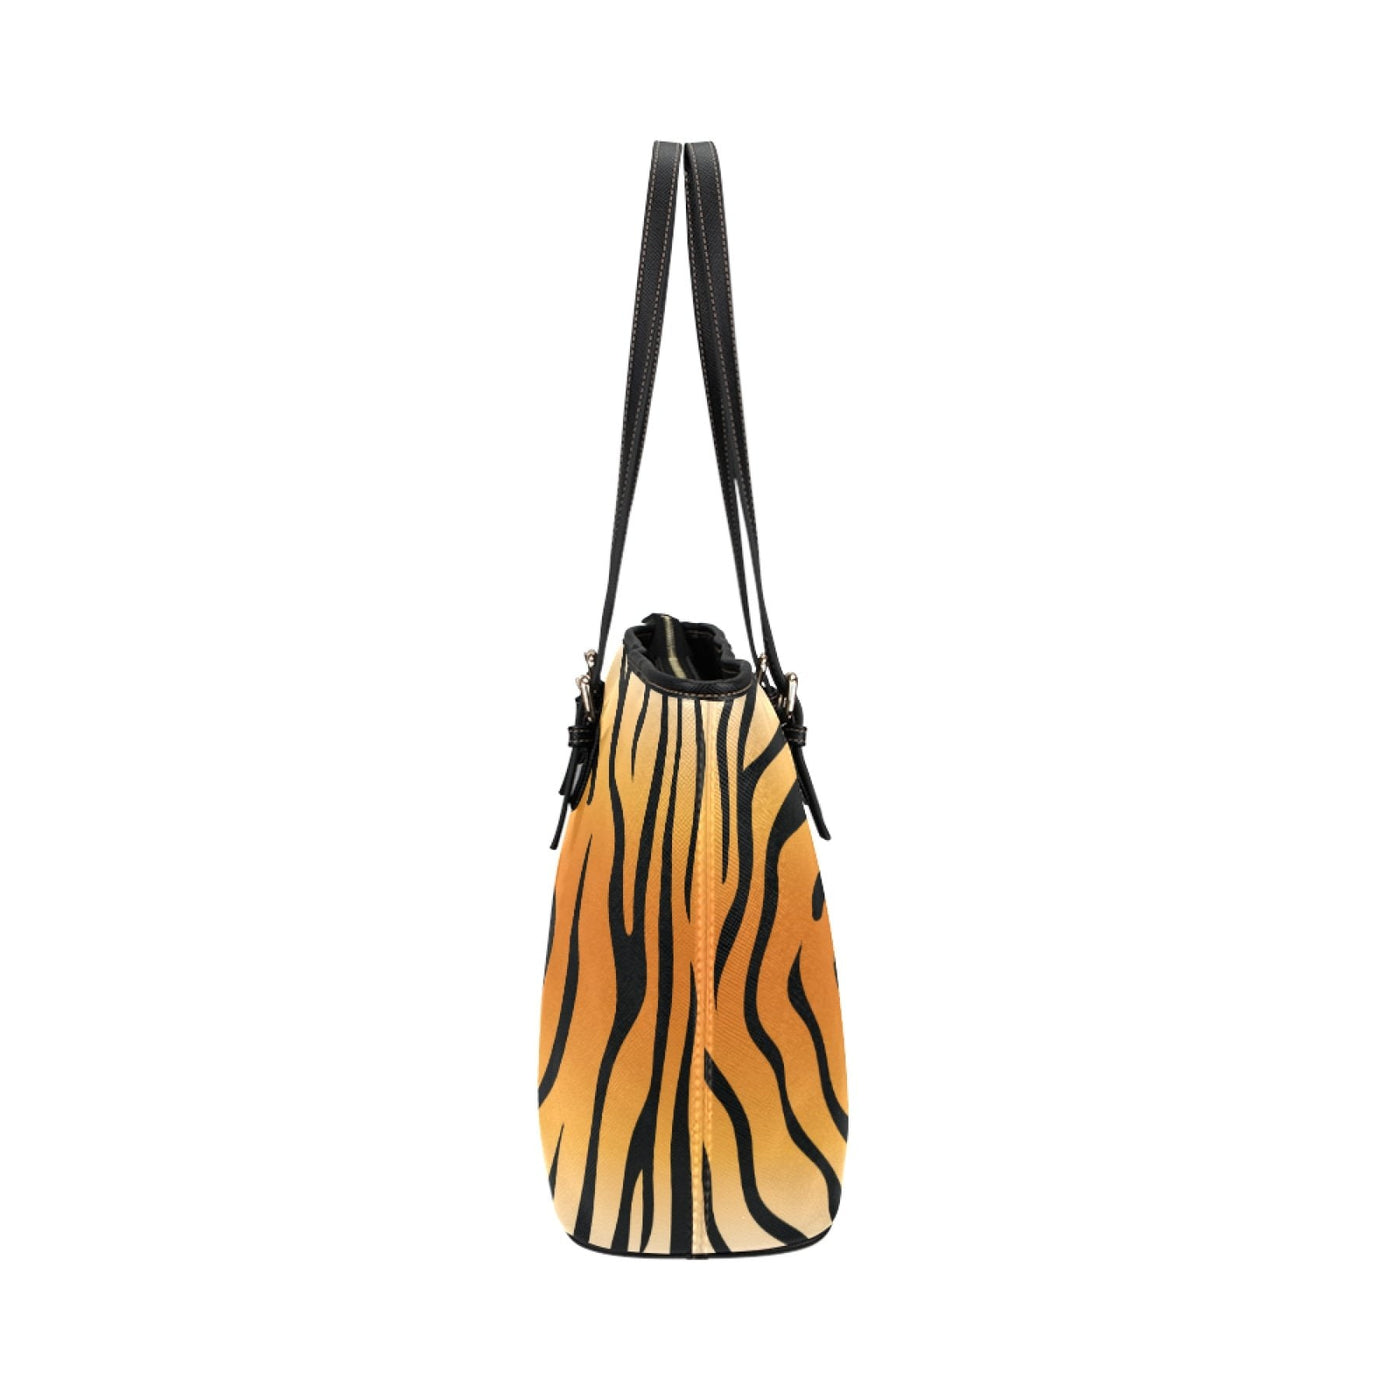 Large Leather Tote Shoulder Bag - Orange And Black Vertical Tiger Stripe Bags